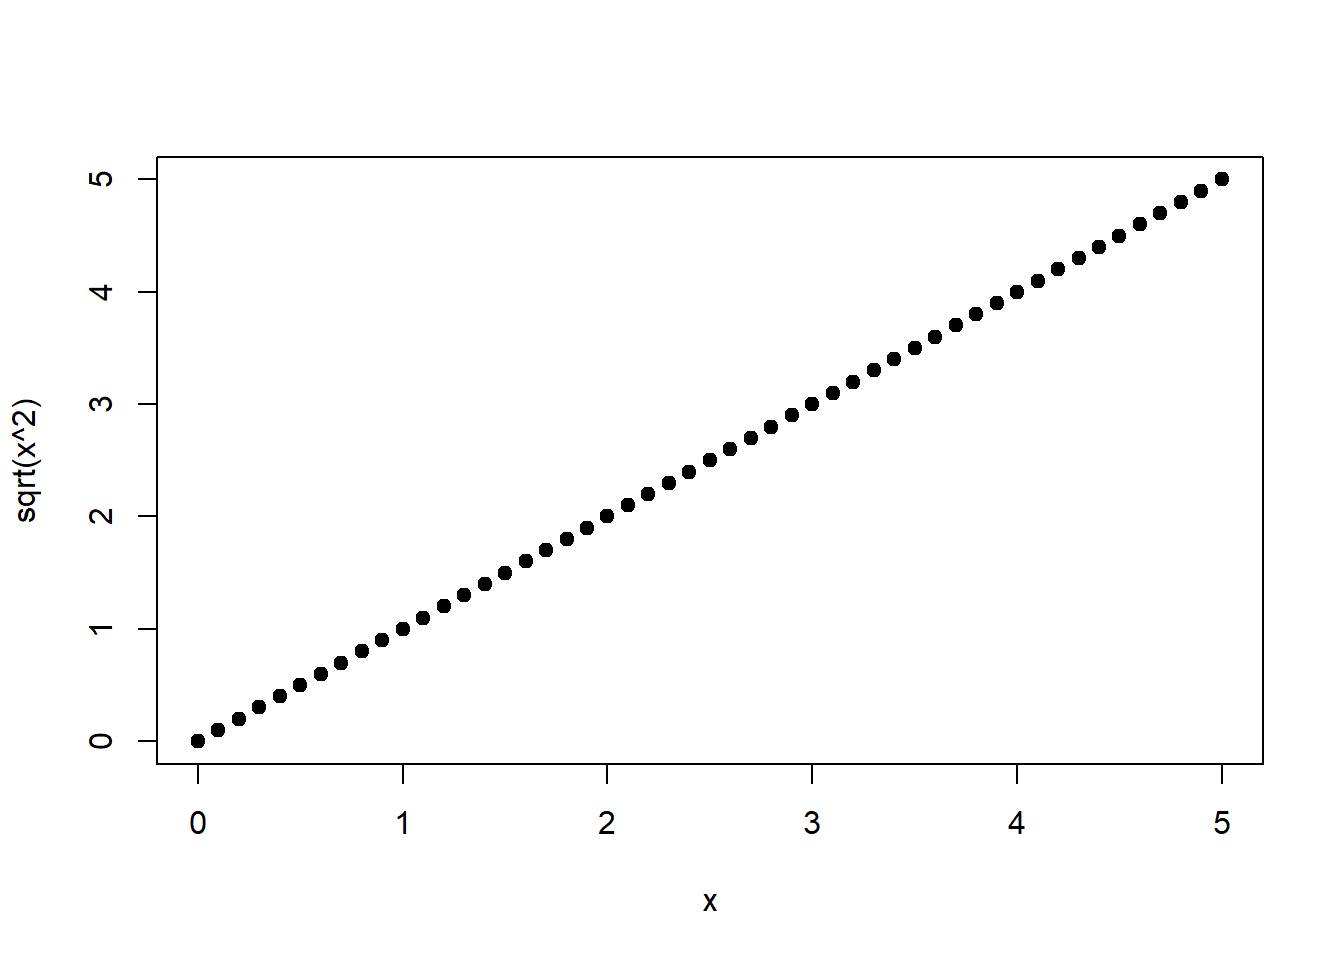 Links: Quadratische Funktion von $x$. Rechts: Wurzelfunktion von $x^2$, s. Gleichung (1.20).